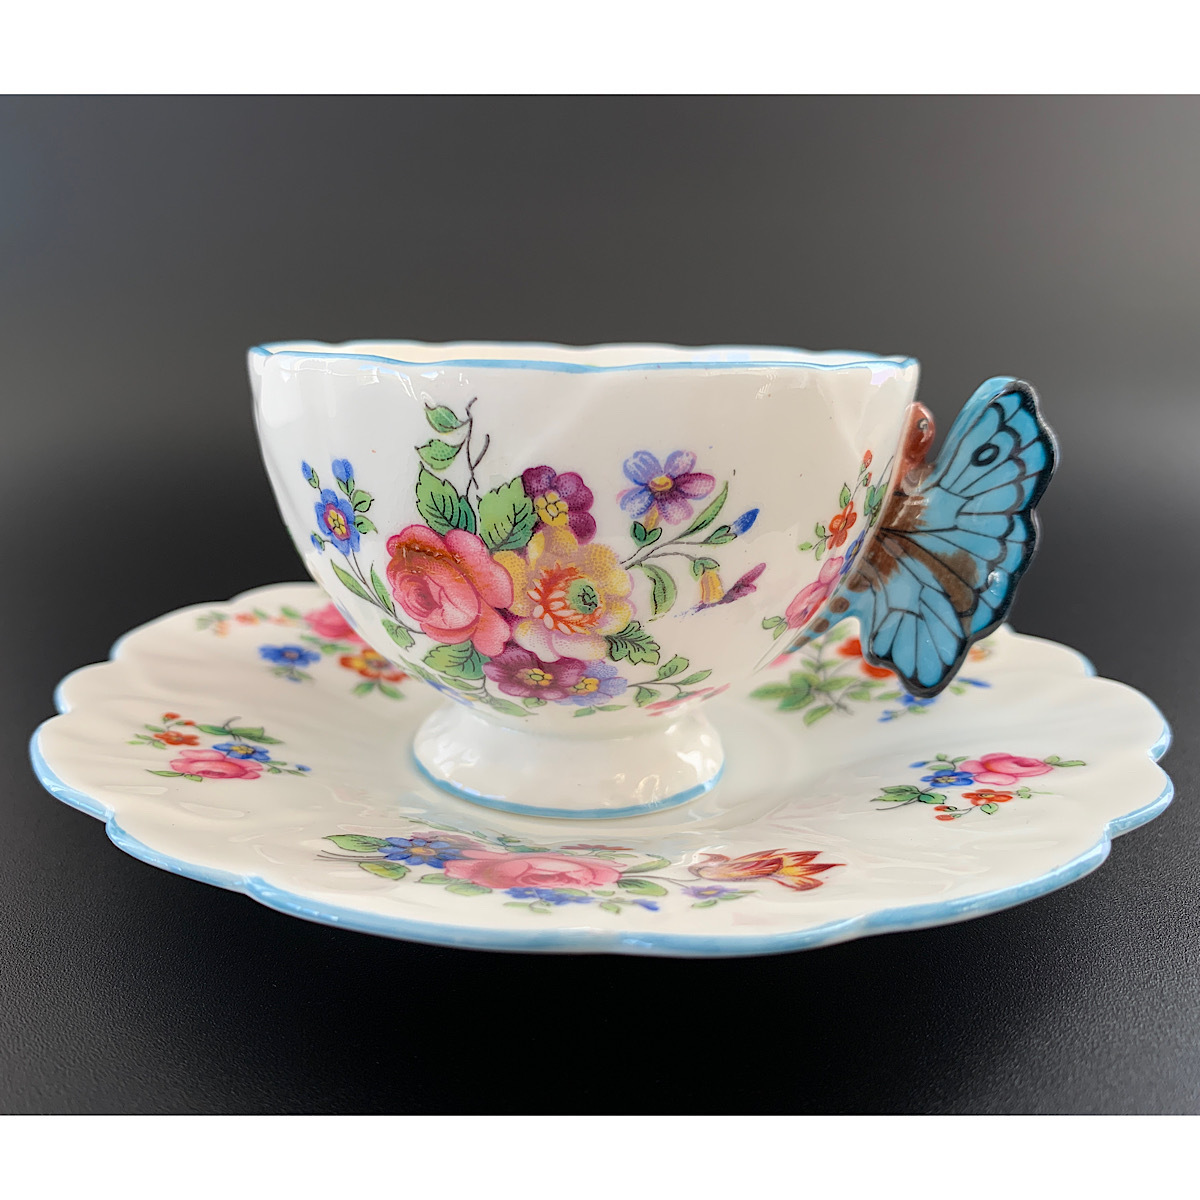 [ очень редкий!!] Aynsley 1930 годы производства 80 год после . бабочка руль цветок рисунок чайная чашка & блюдце прекрасный товар!!